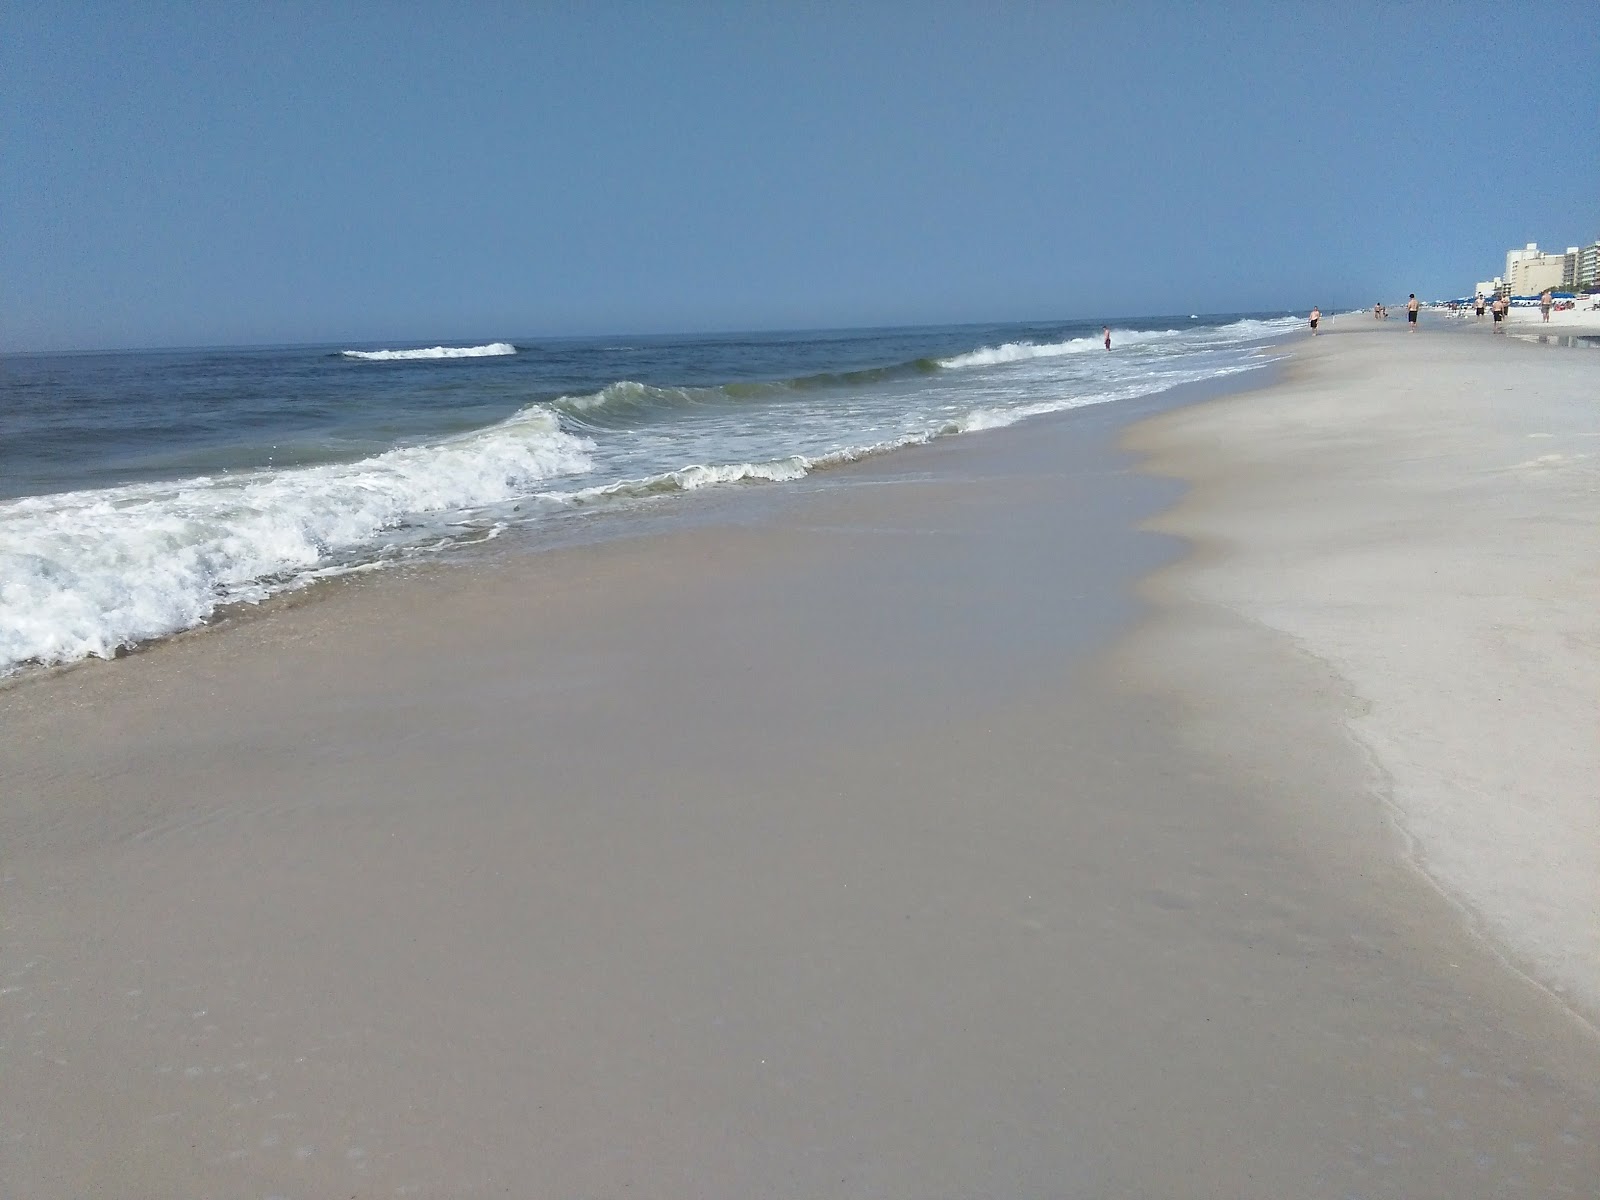 Fotografie cu Gulf shores beach - locul popular printre cunoscătorii de relaxare